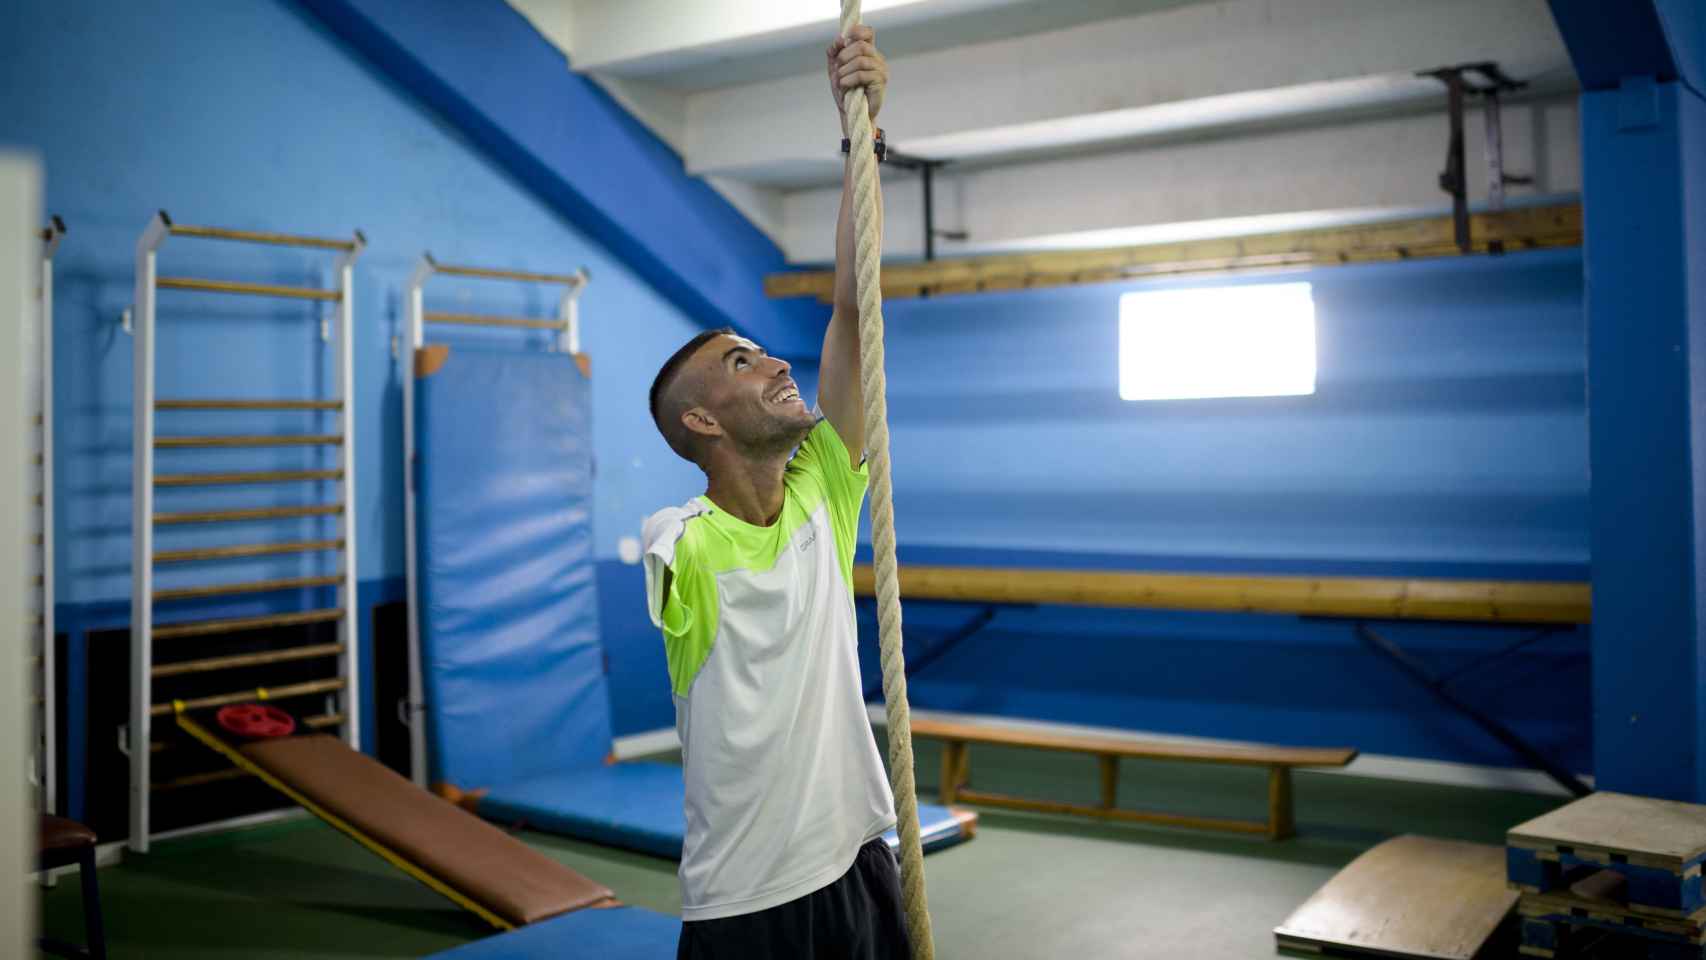 Abderrahman en el gimnasio durante un entrenamiento.